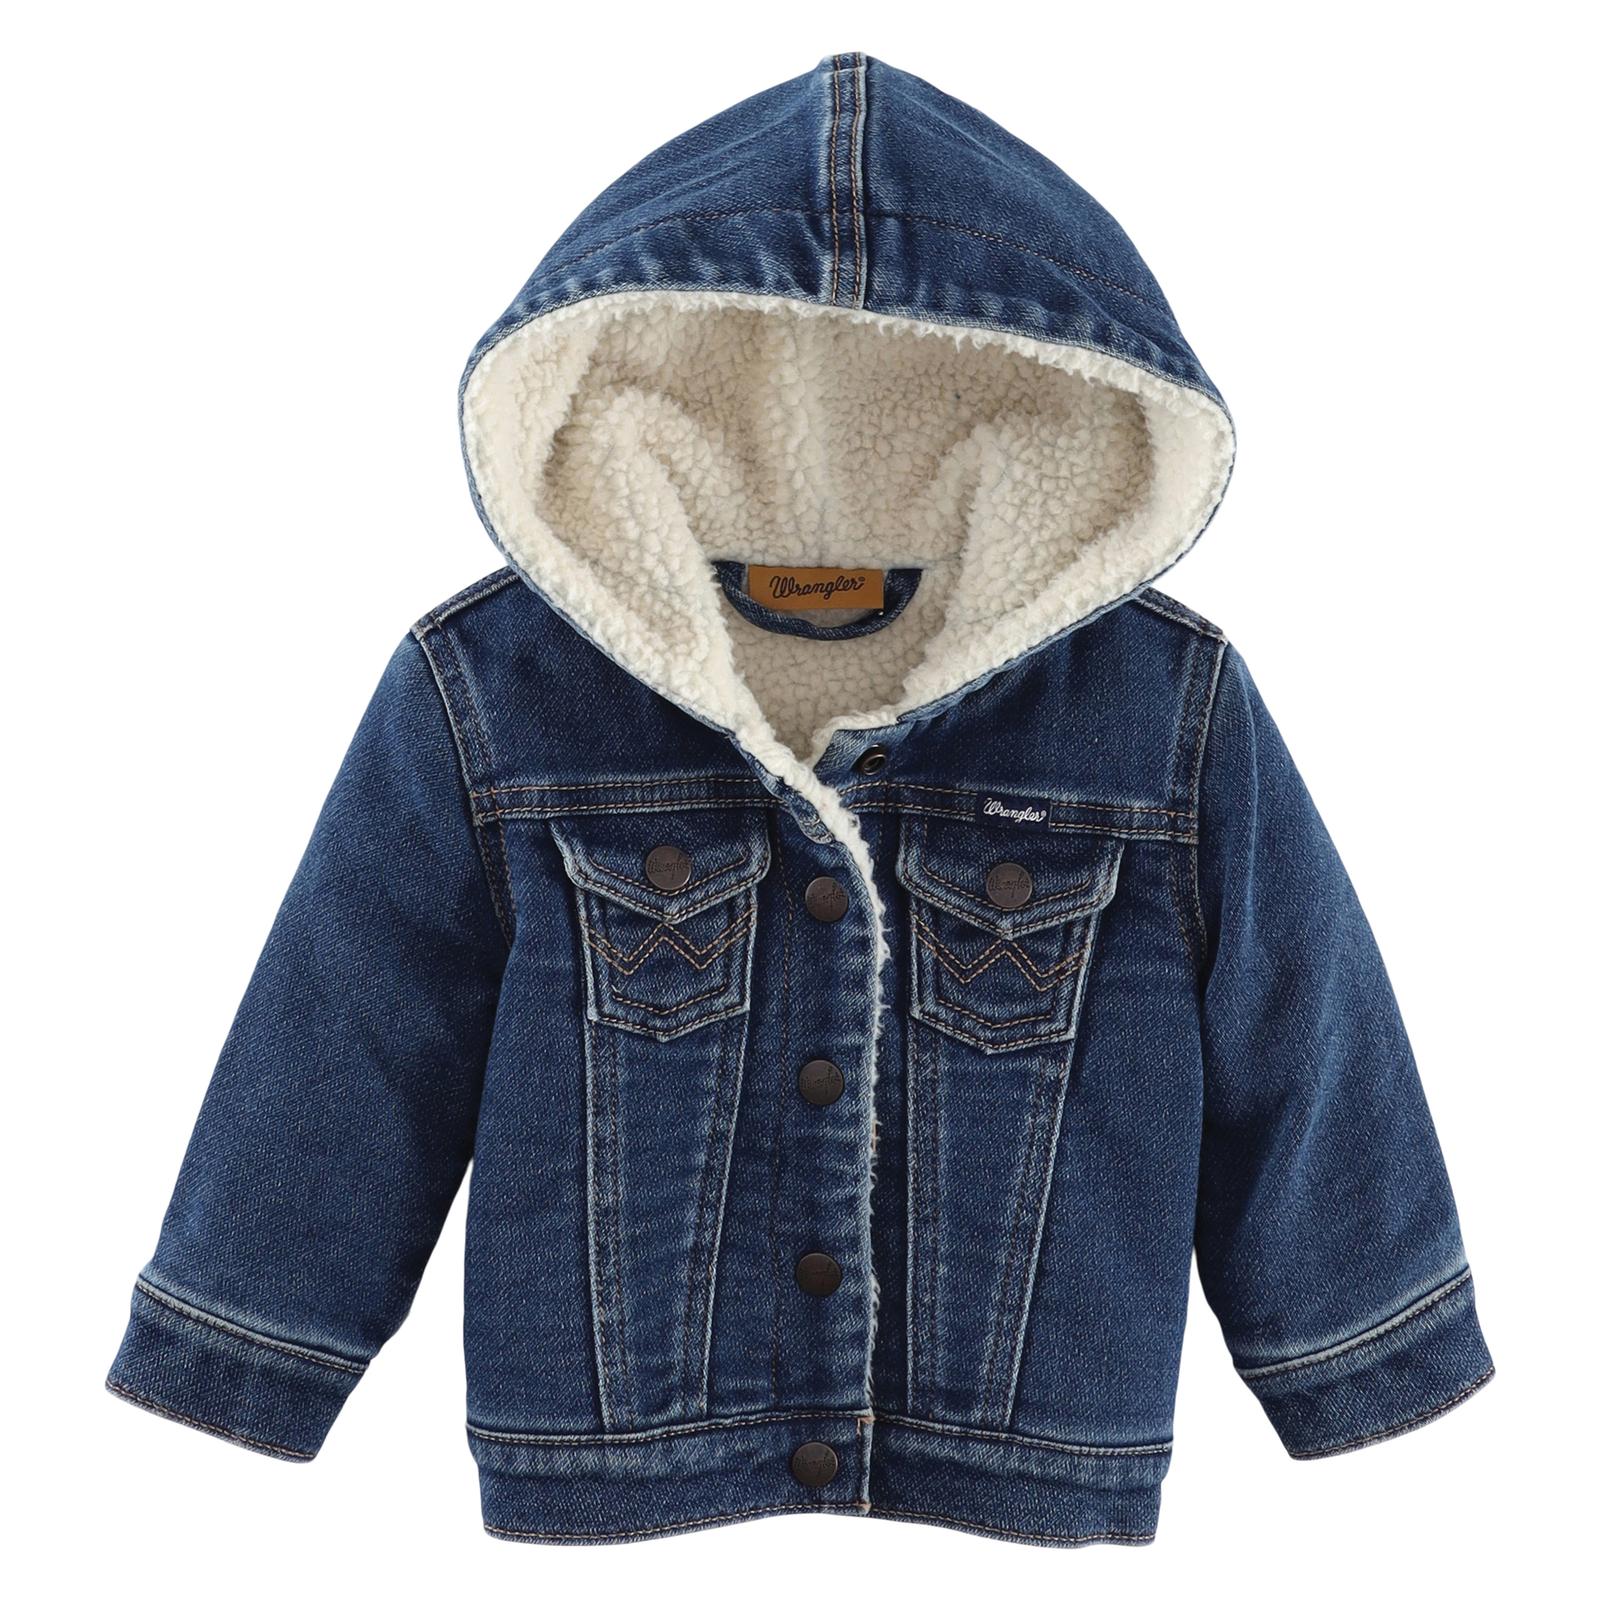 Wrangler Infant/Toddler Girl's Jacket STYLE 112335833